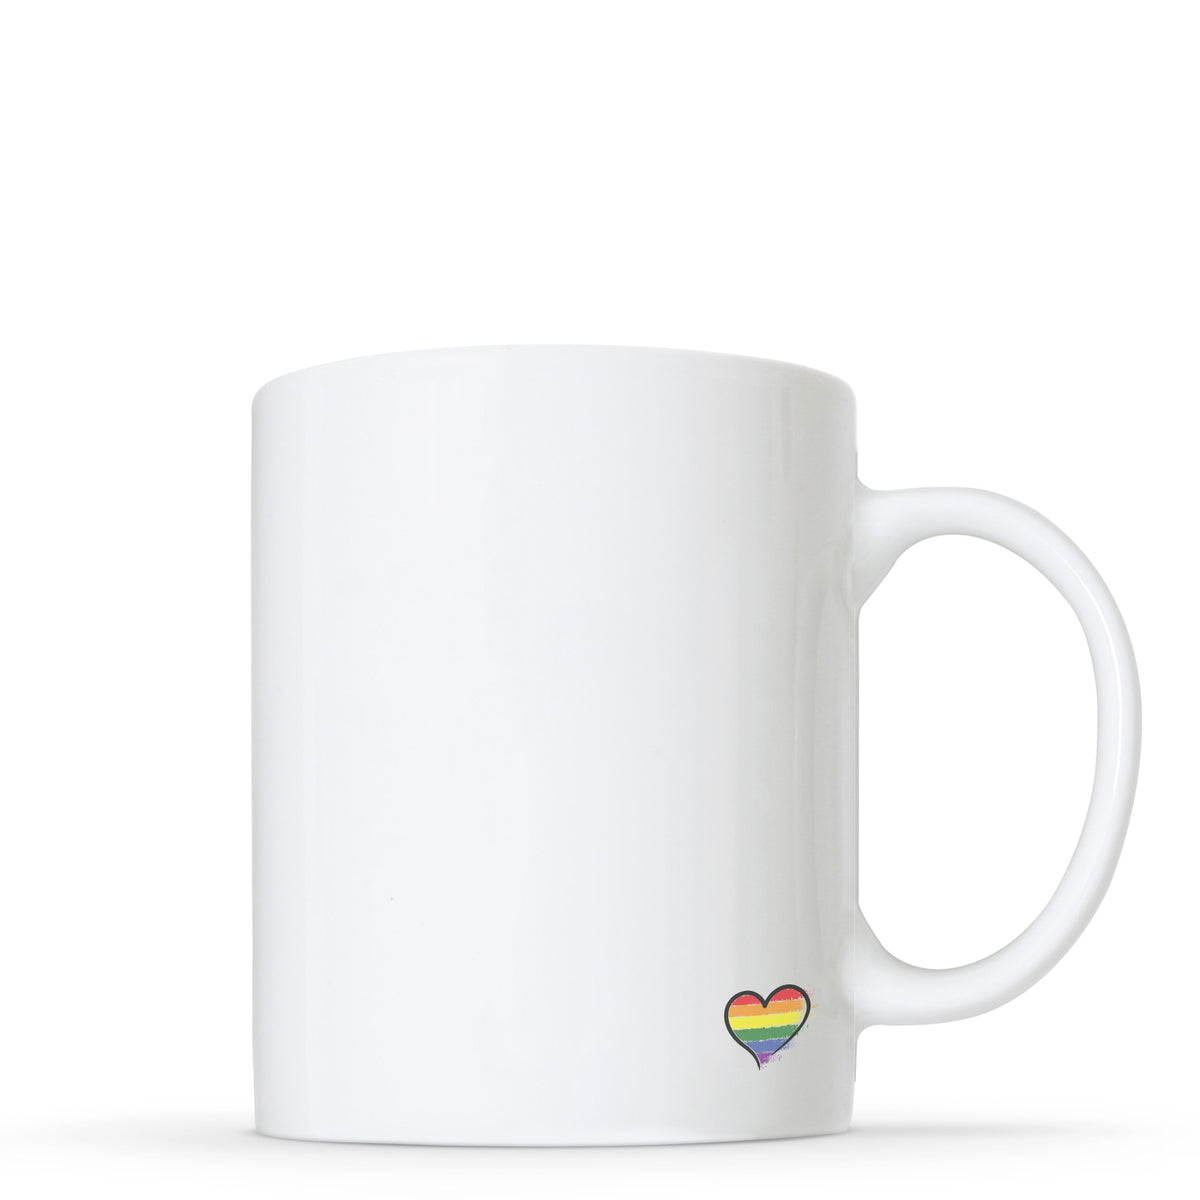 Stay You - Transgender Flag Heart Shape Mug | Gift